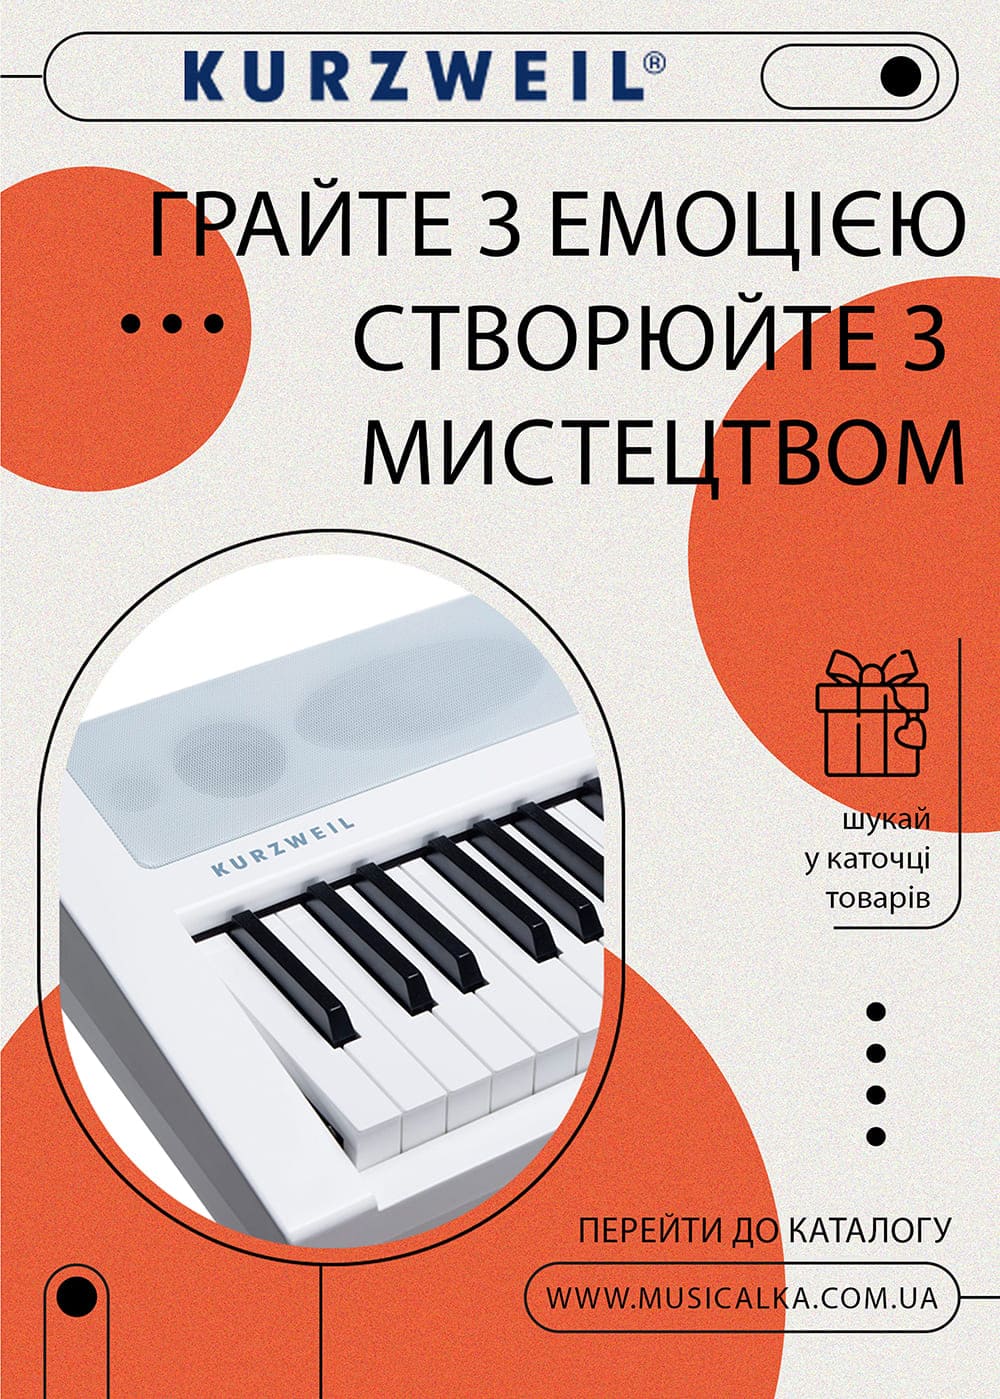 Kurzweil синтезаторы и пианино ОБНОВЛЕННЫЙ